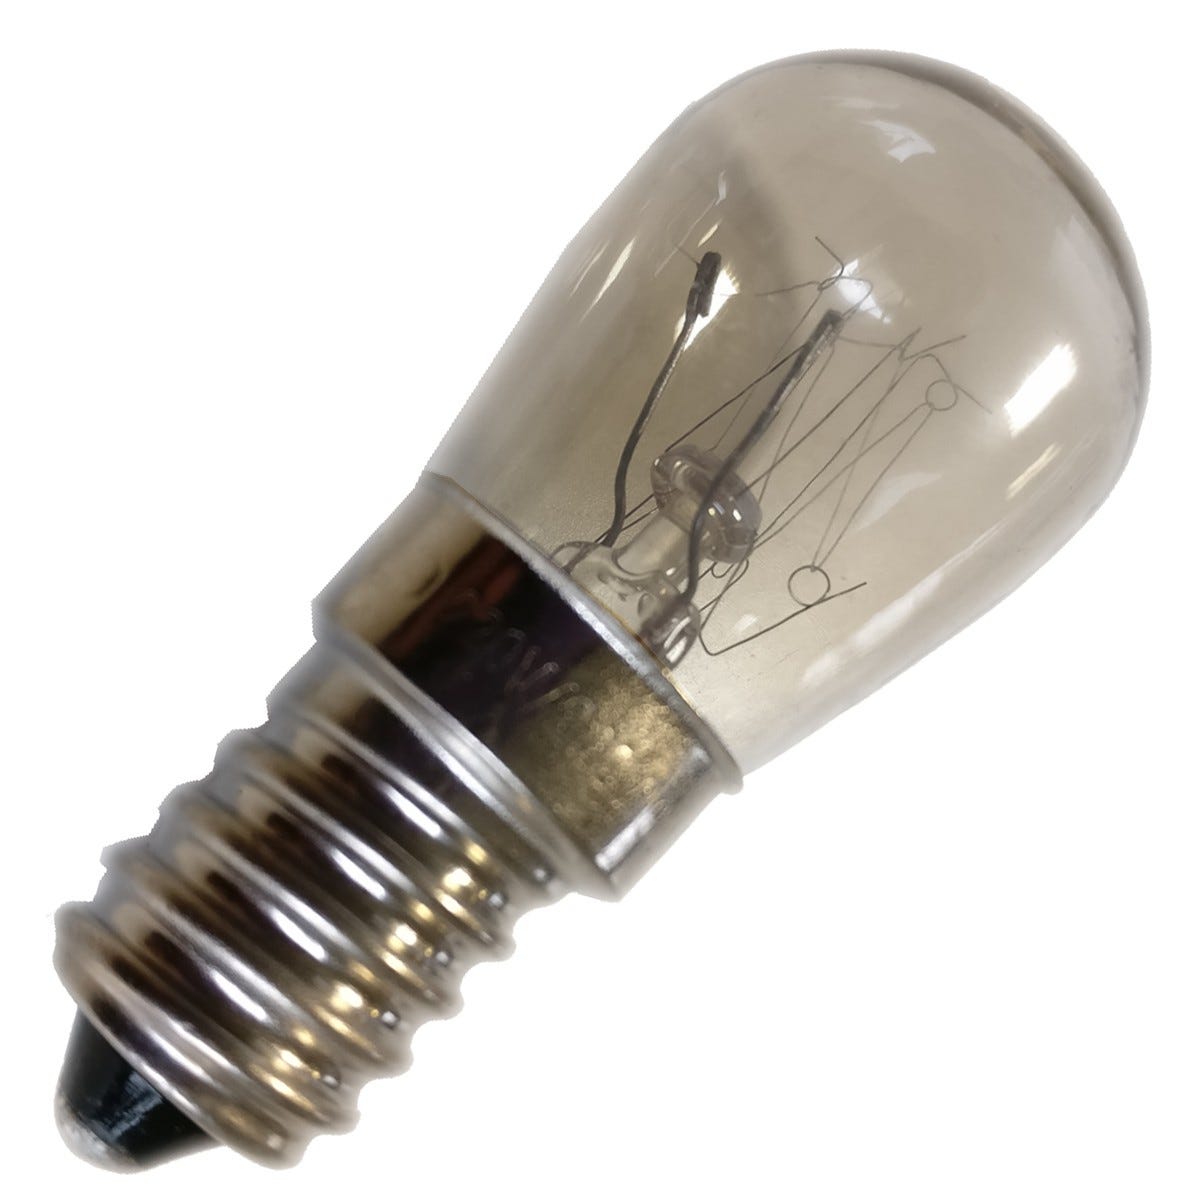 Lamp (ampoule) E27 40W 220V Réfrigérateur 480132100815